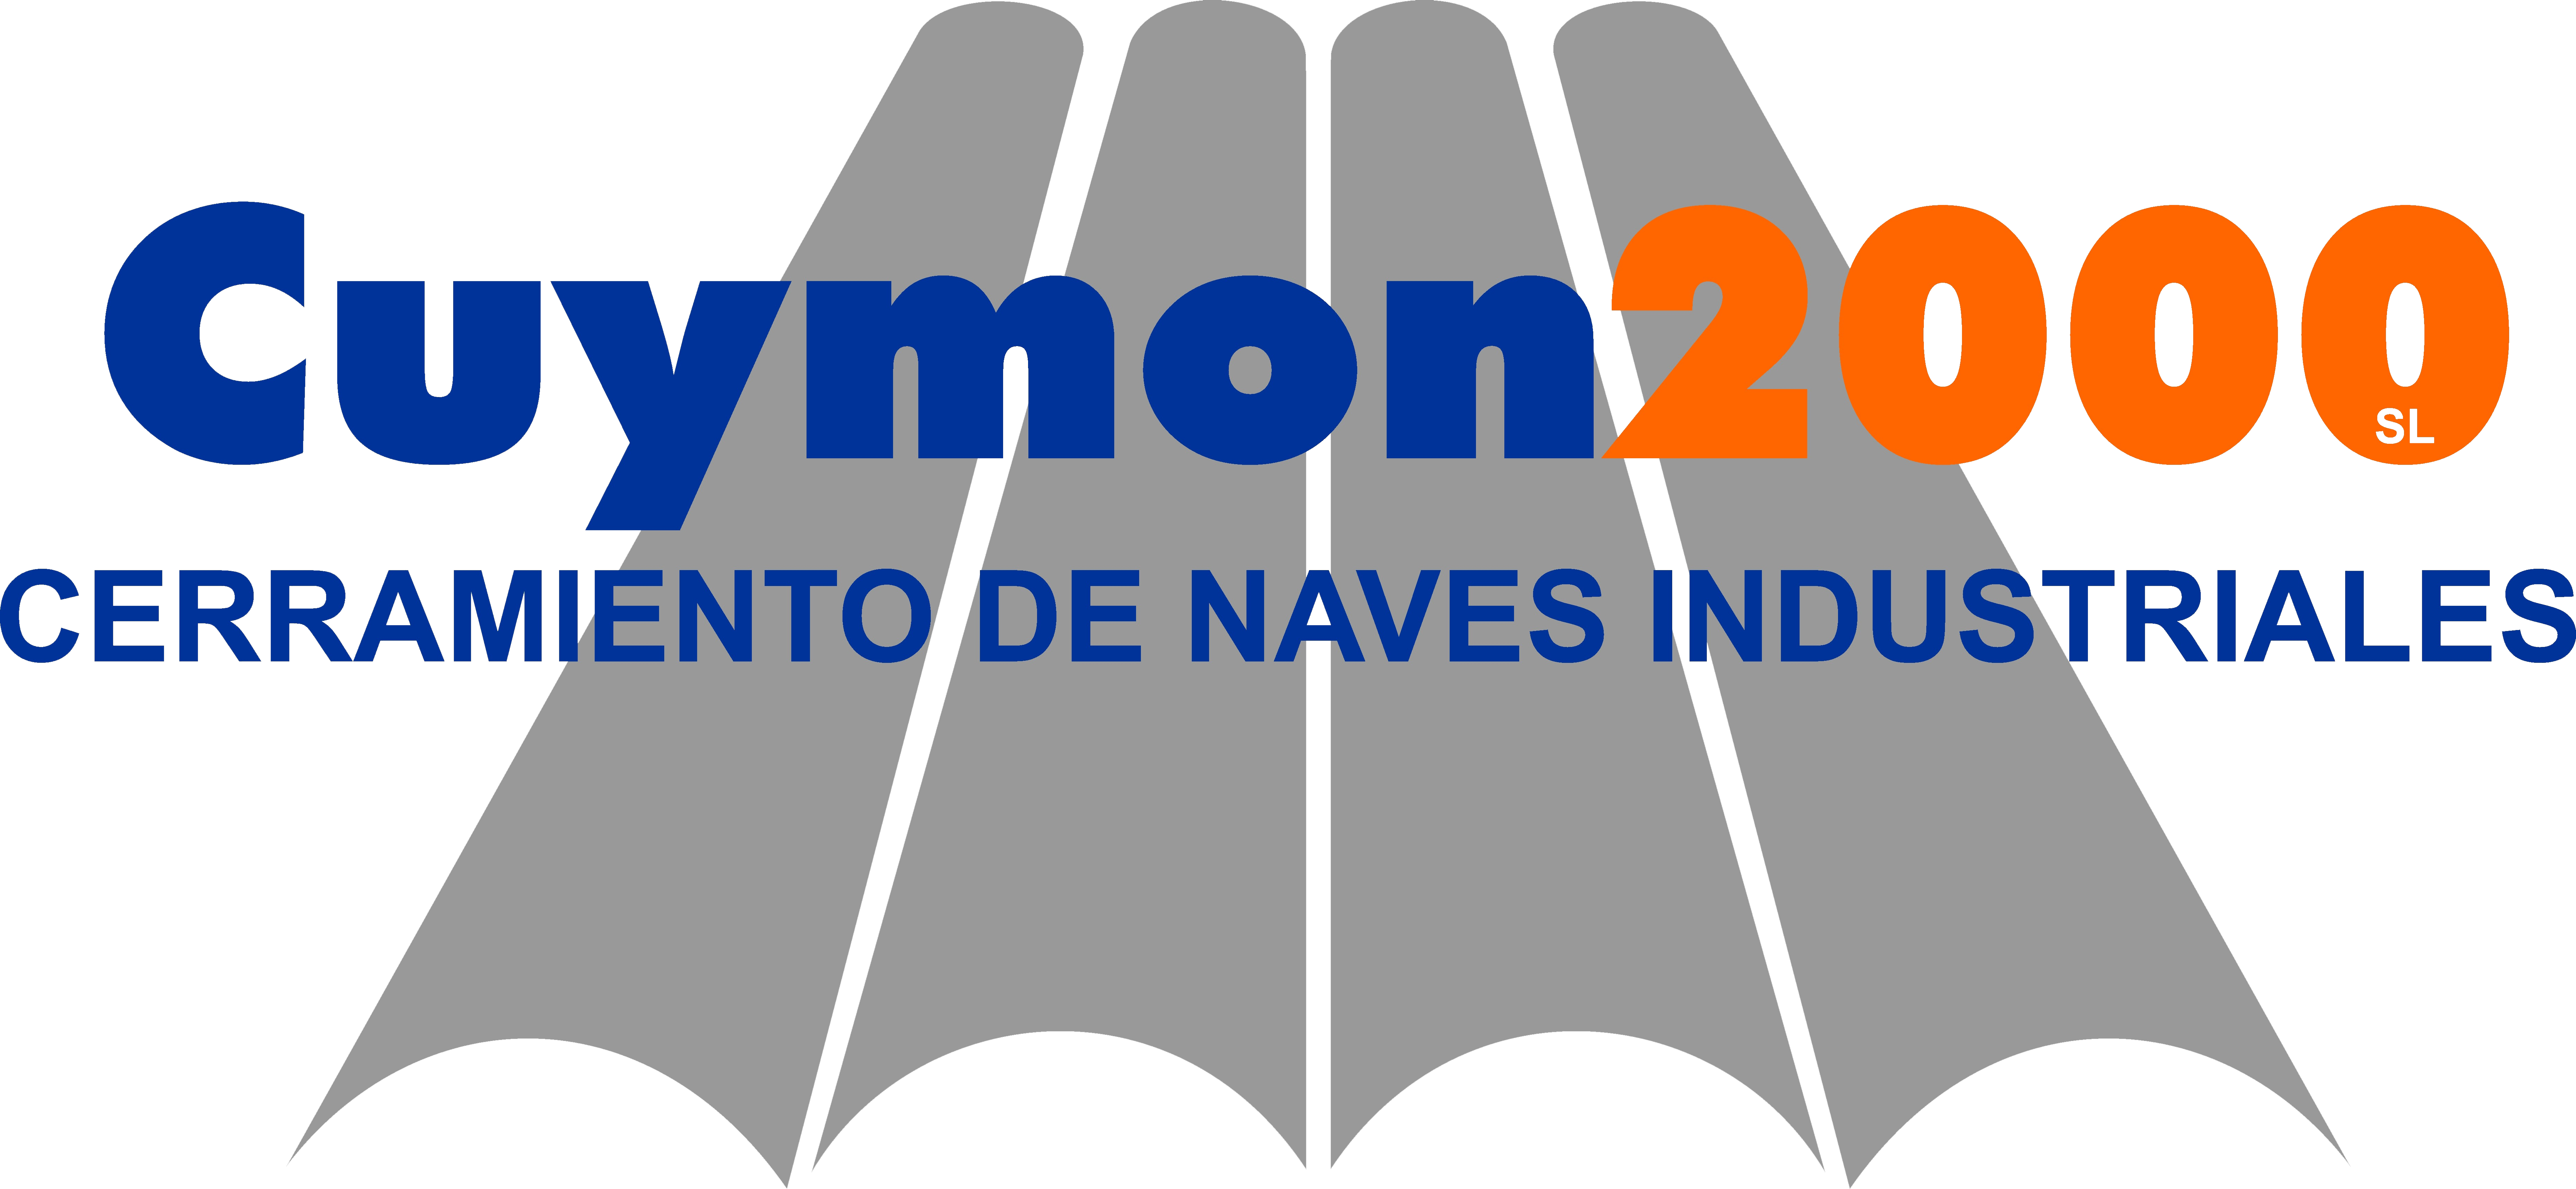 Logo Cuymon2000, cerramiento de naves industriales